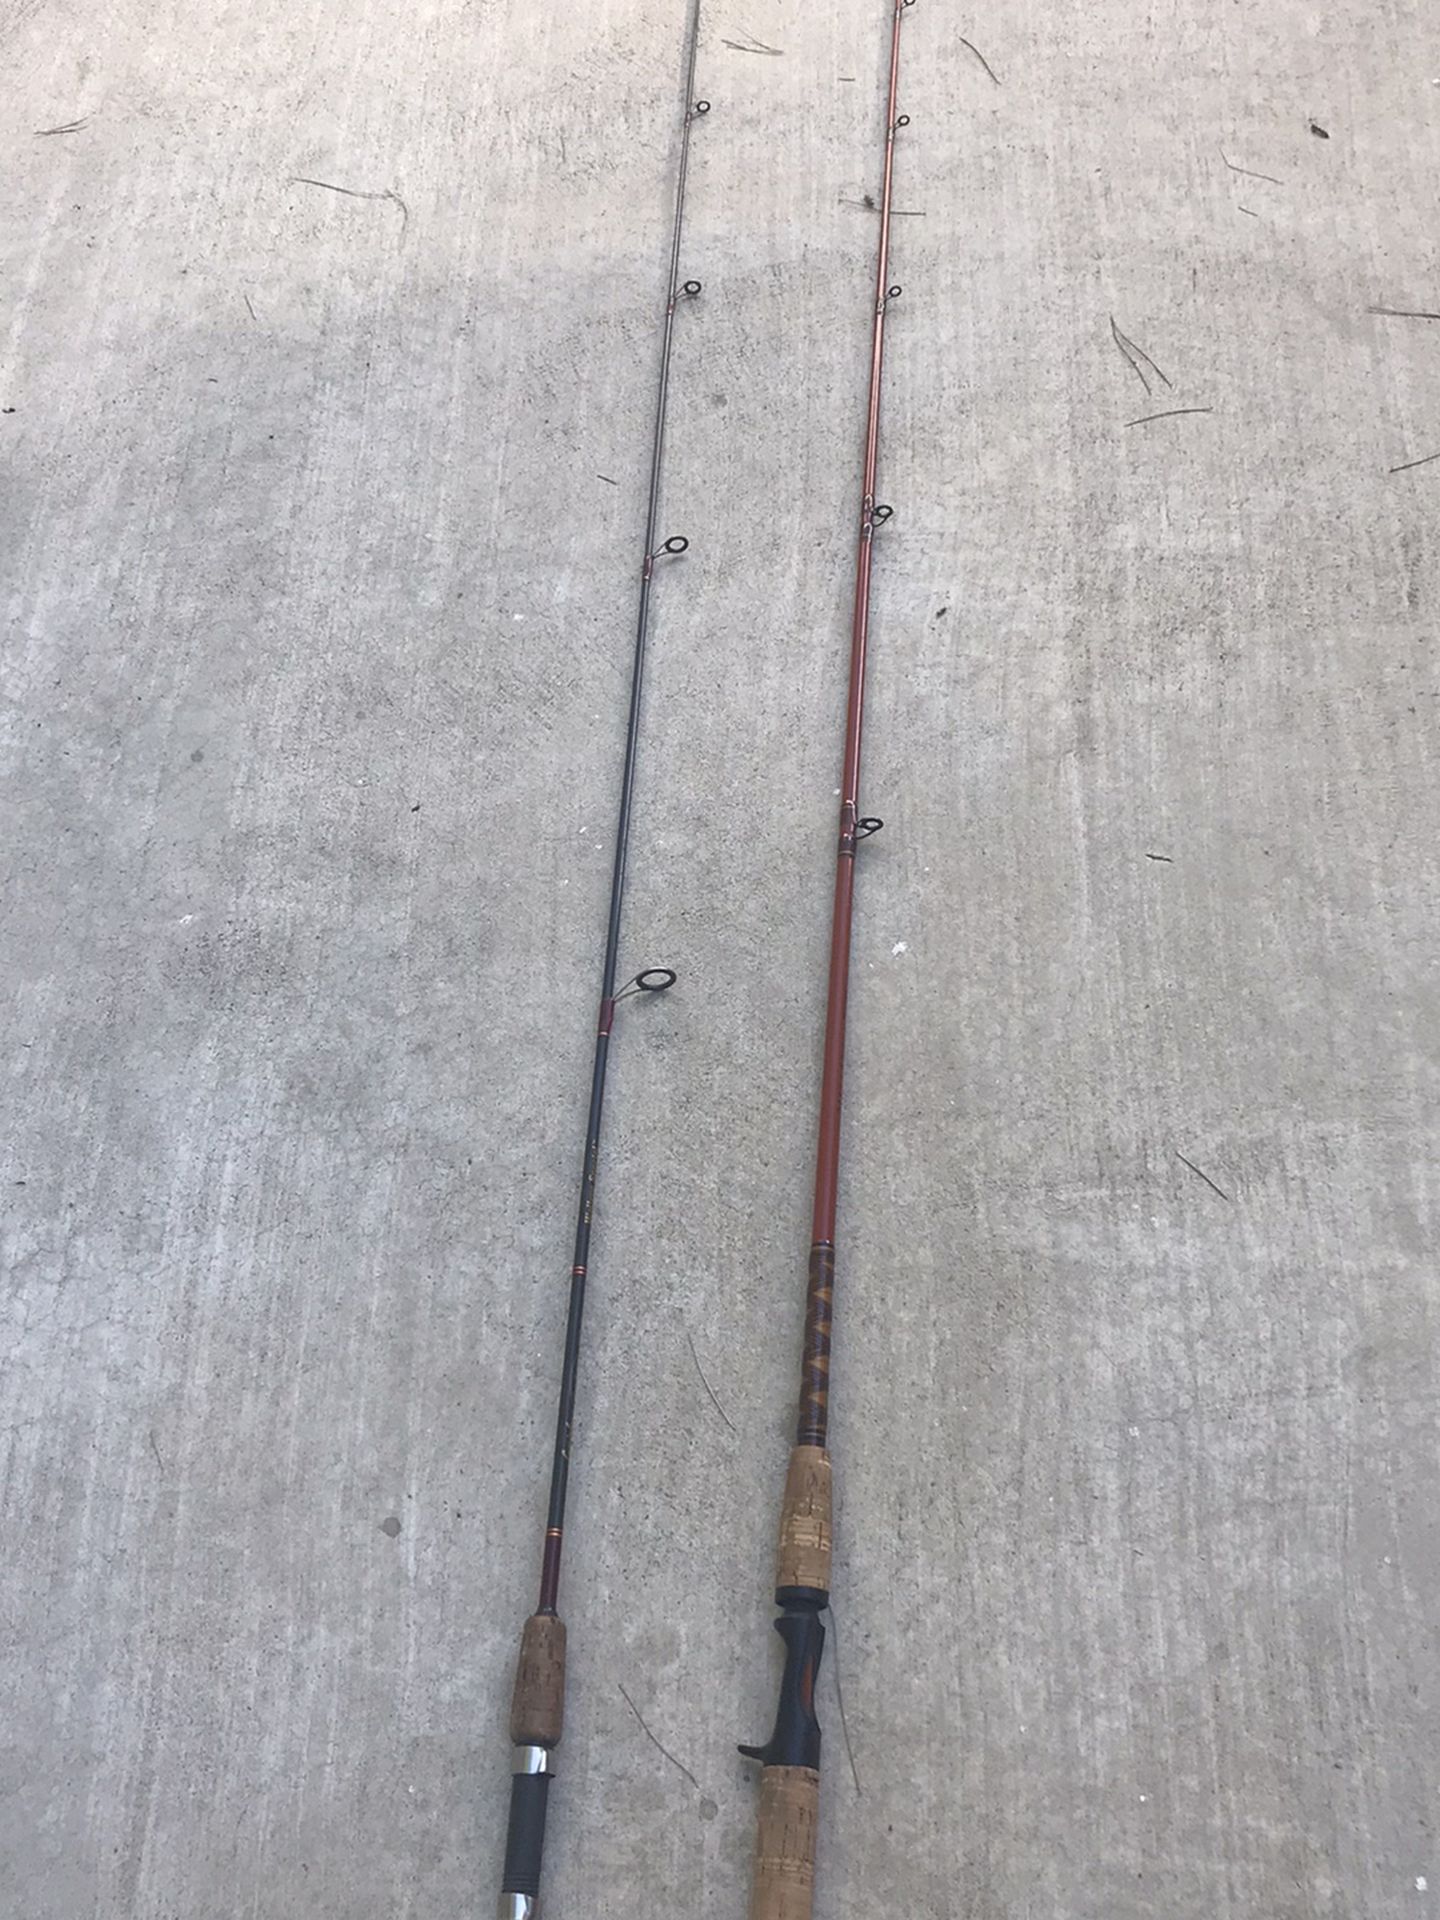 Lamiglass and Daiwa Fishing Rod